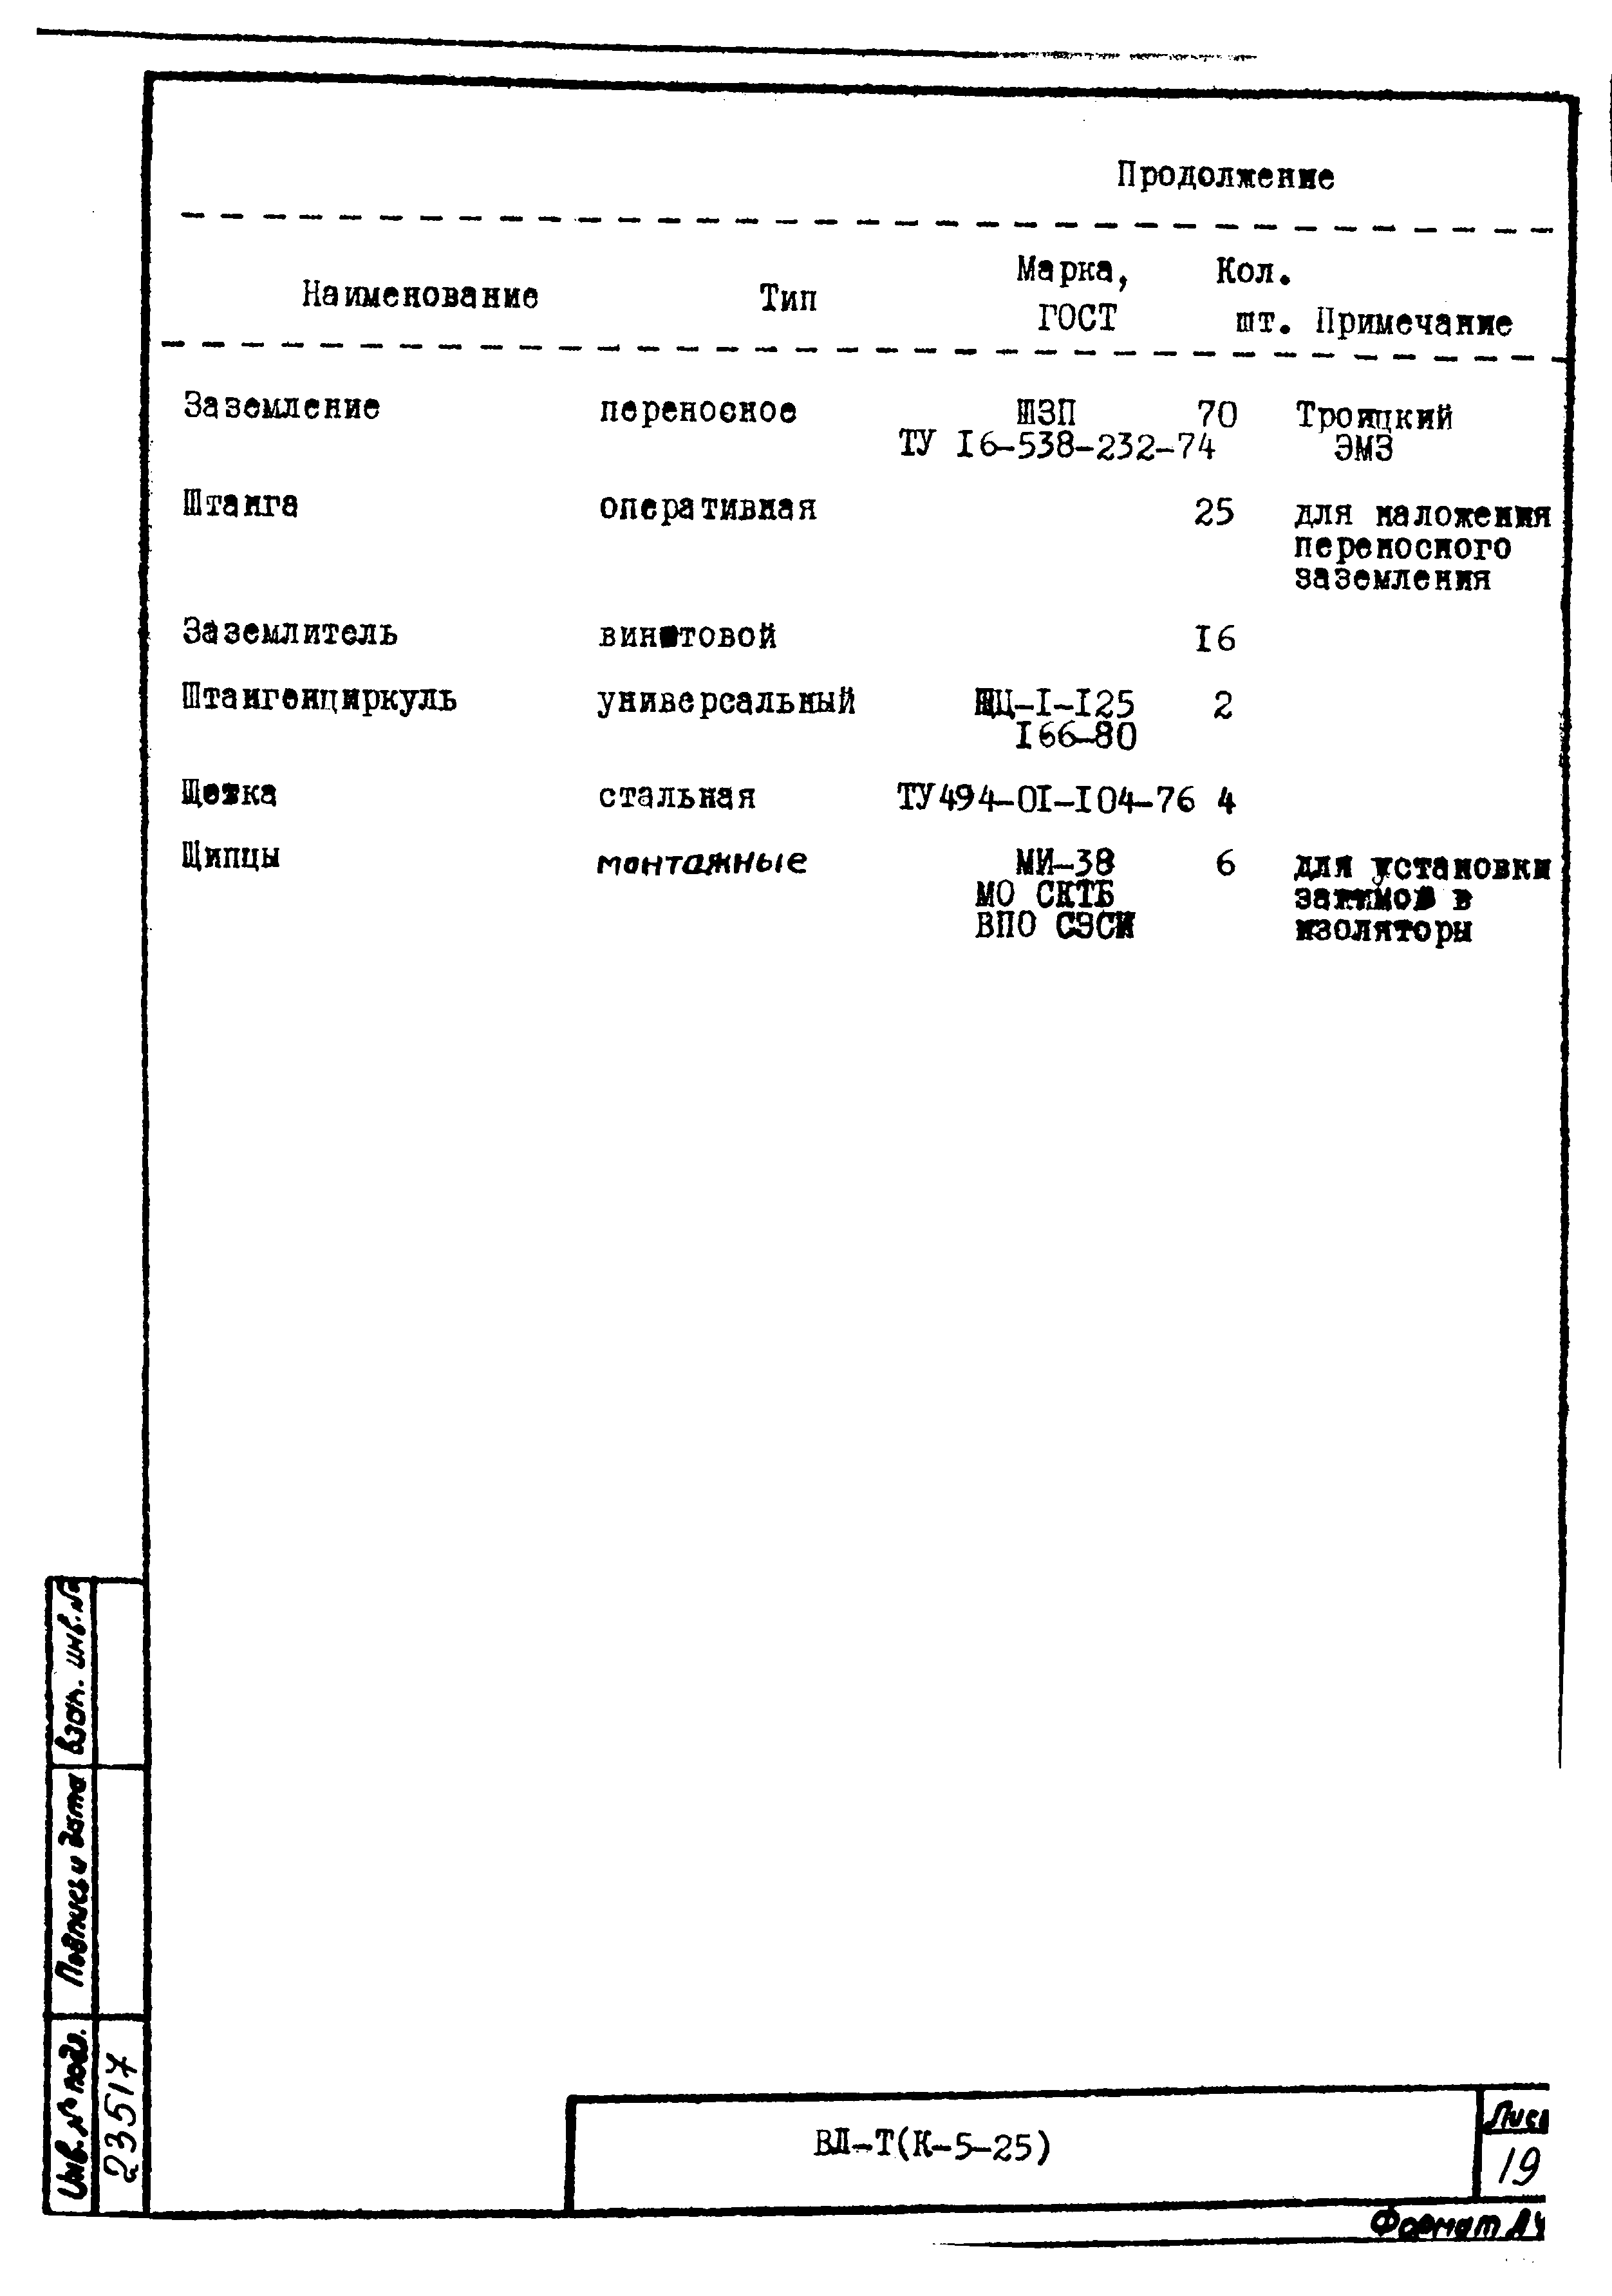 Технологическая карта К-5-25-21